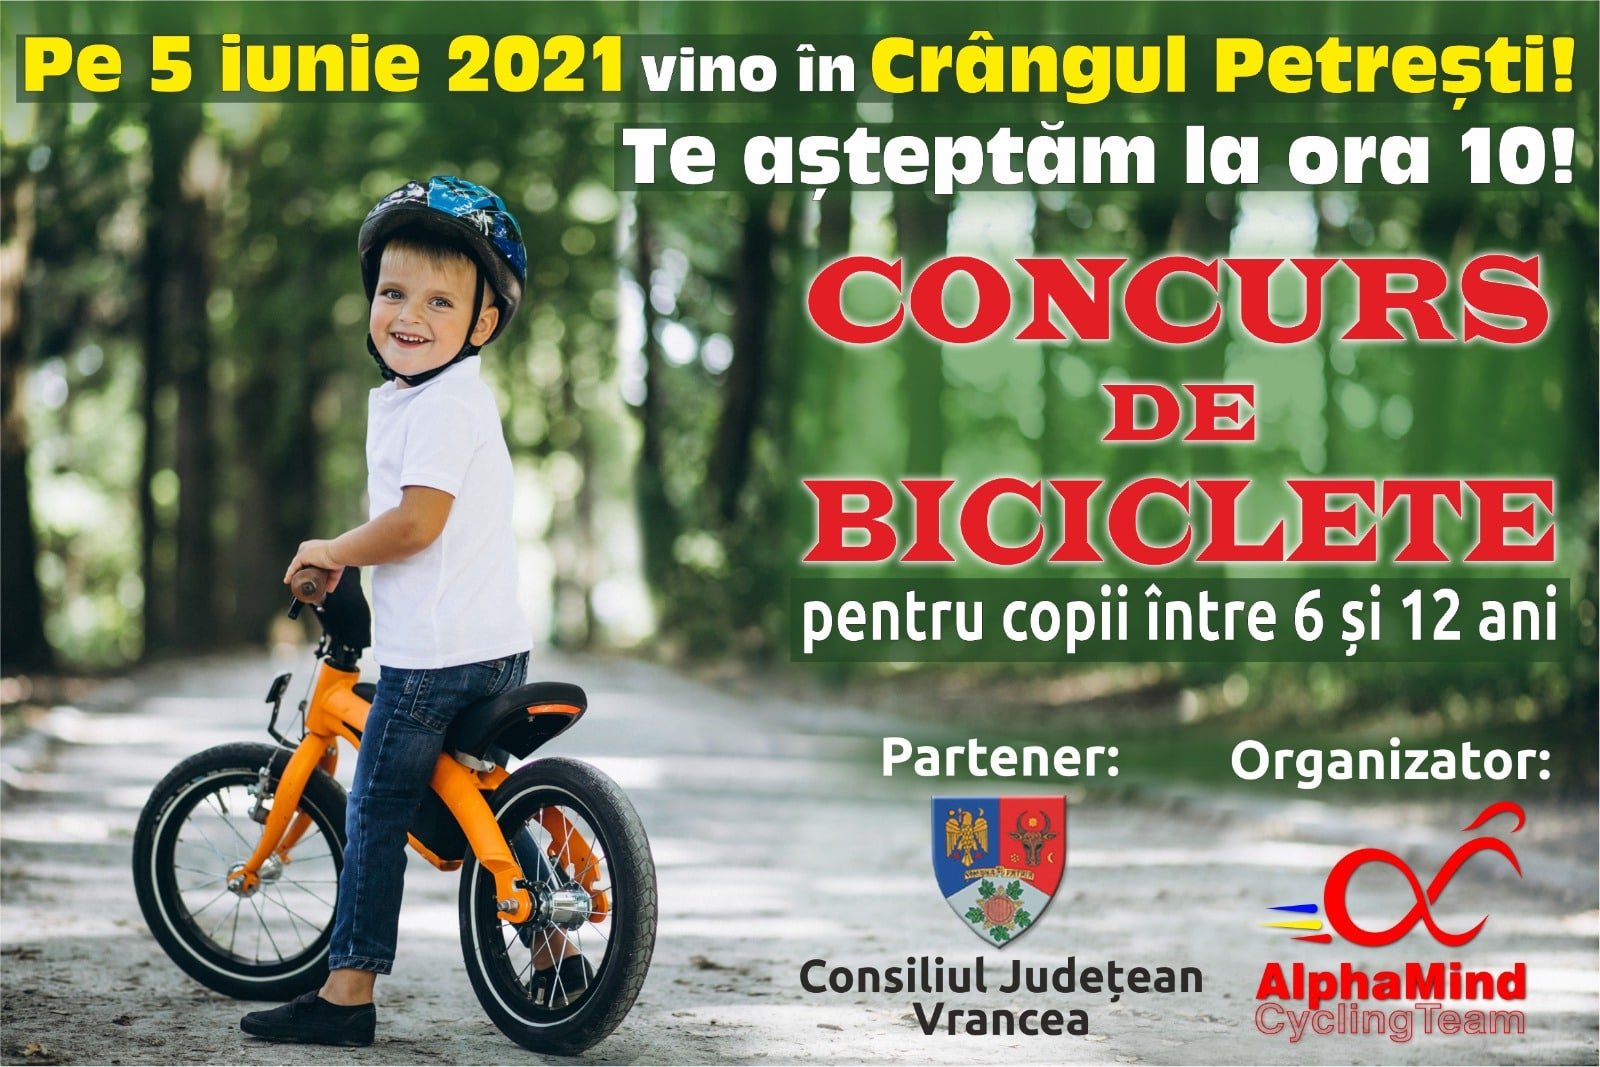 Concurs de biciclete în Crângul Petrești pe 5 iunie 2021